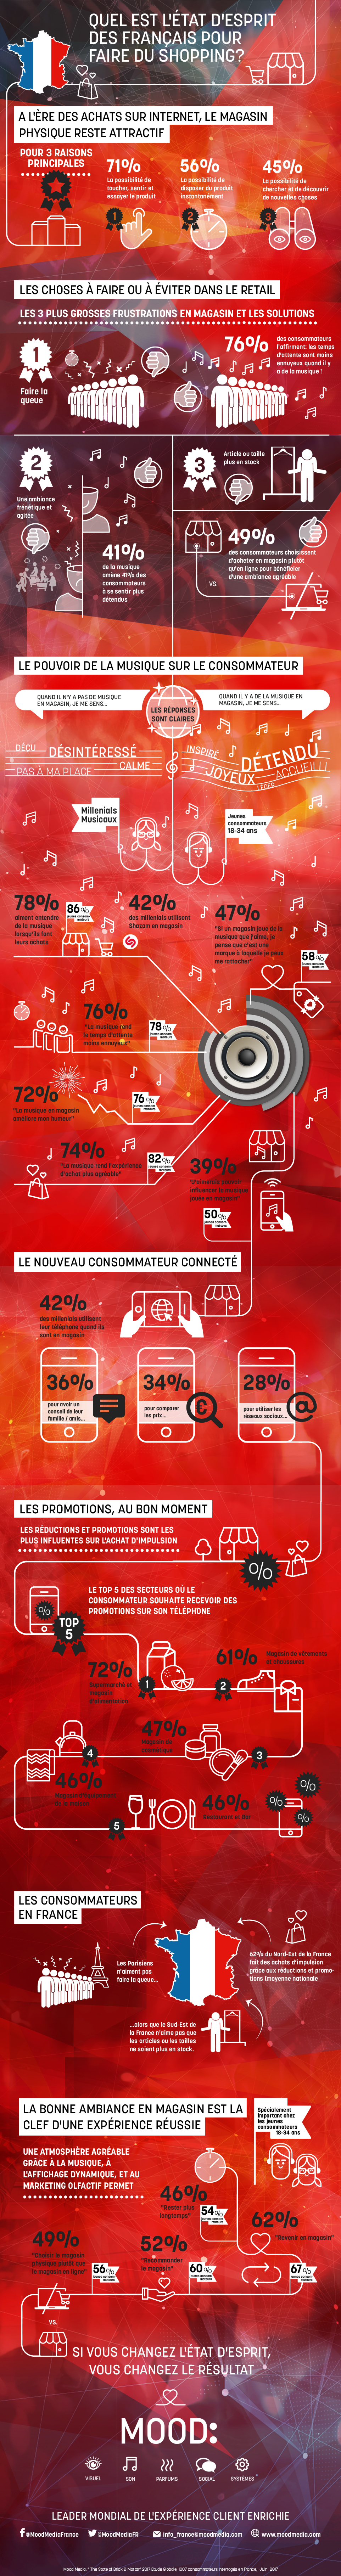 Infographie Mood Media Shoppers Français